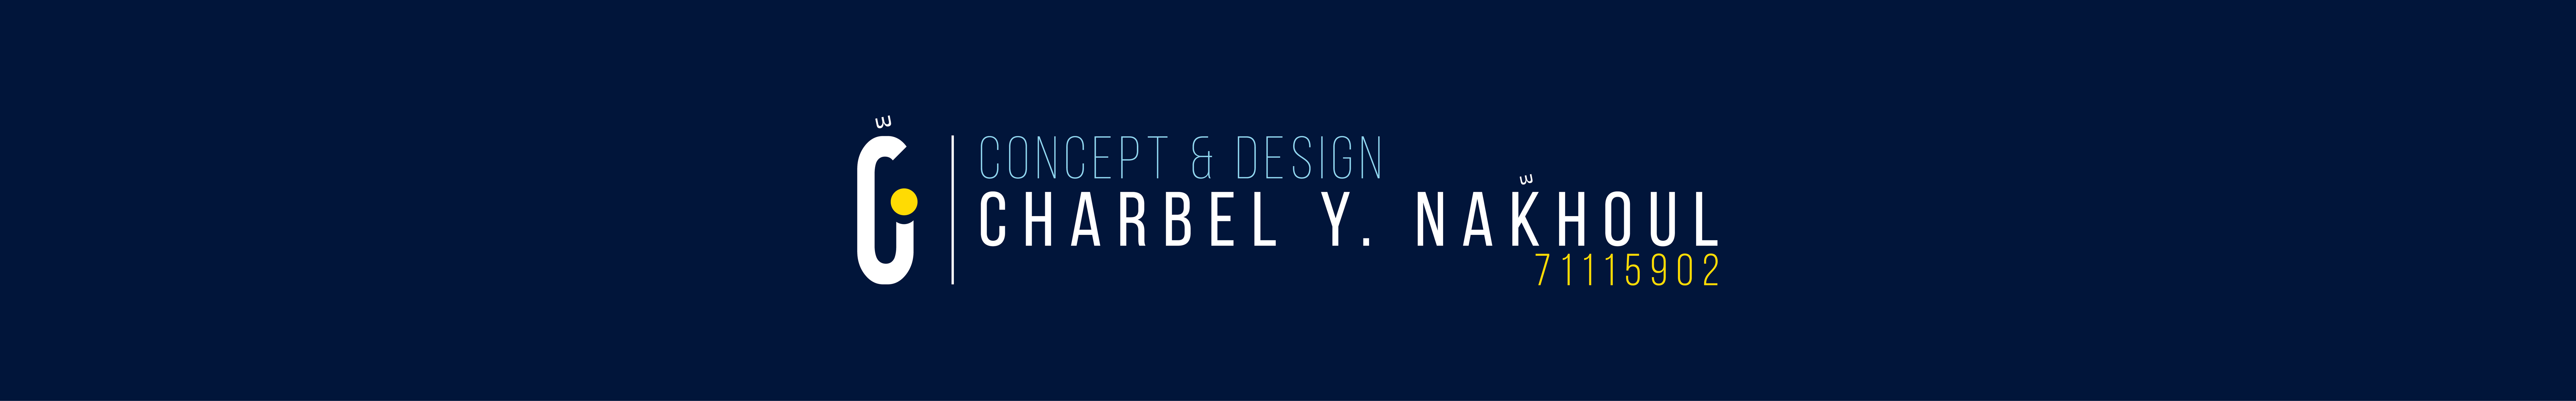 Charbel Y. Nakhoul's profile banner